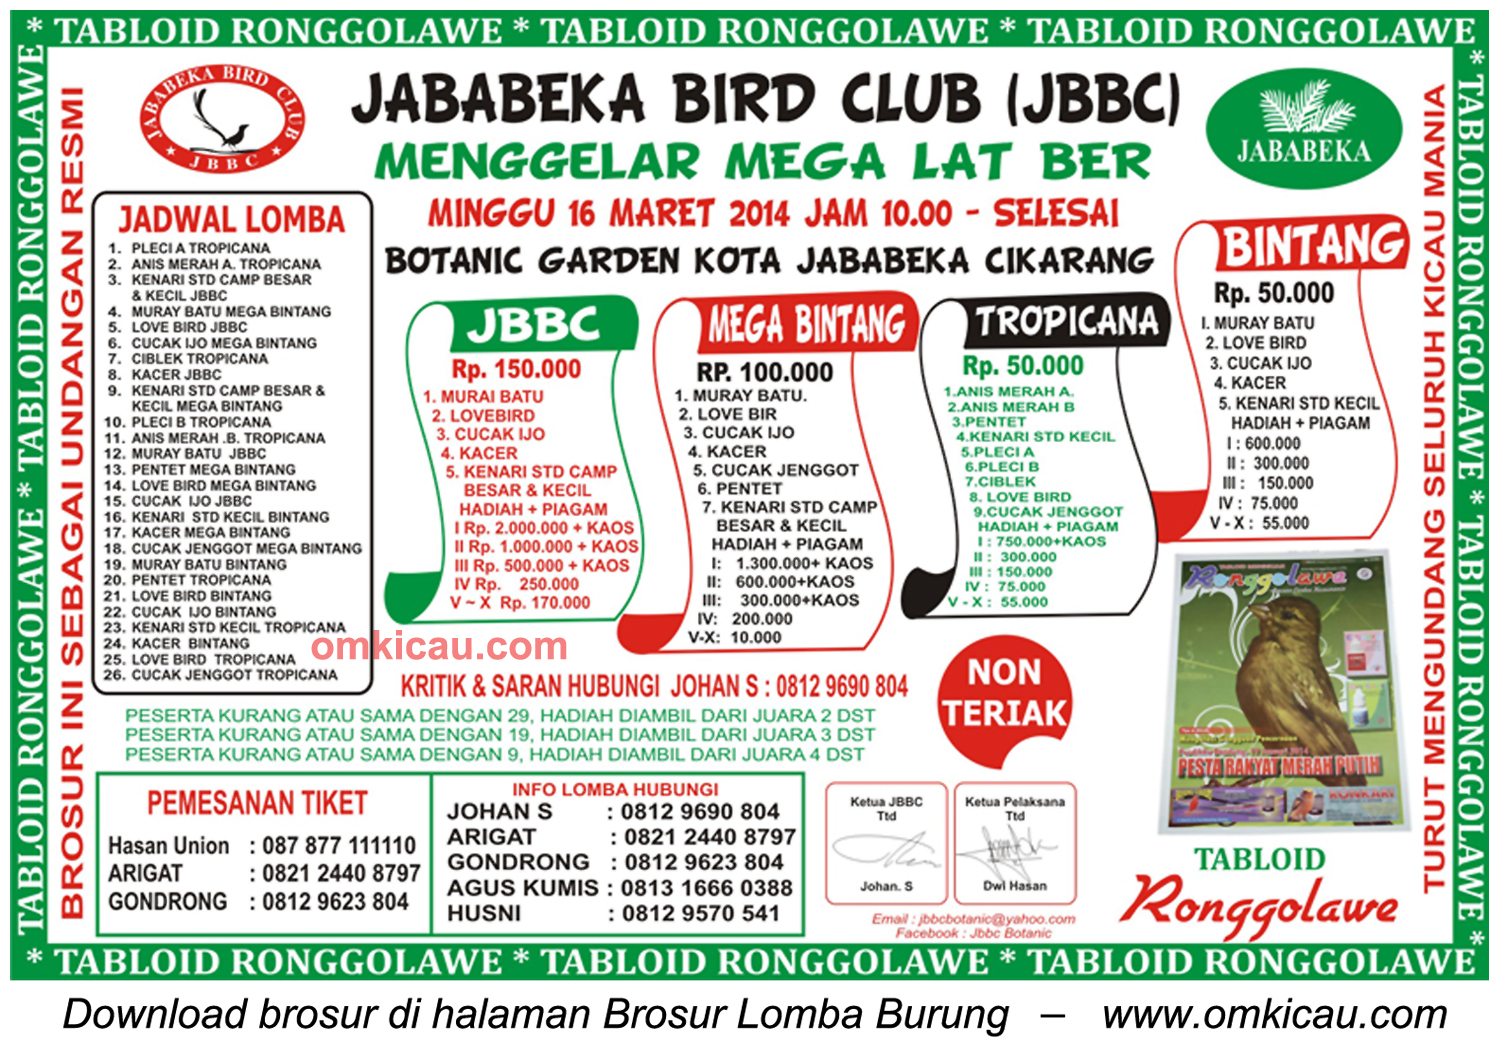 Brosur Mega Latber Jababeka Bird Club, Bekasi, 16 Maret 2014